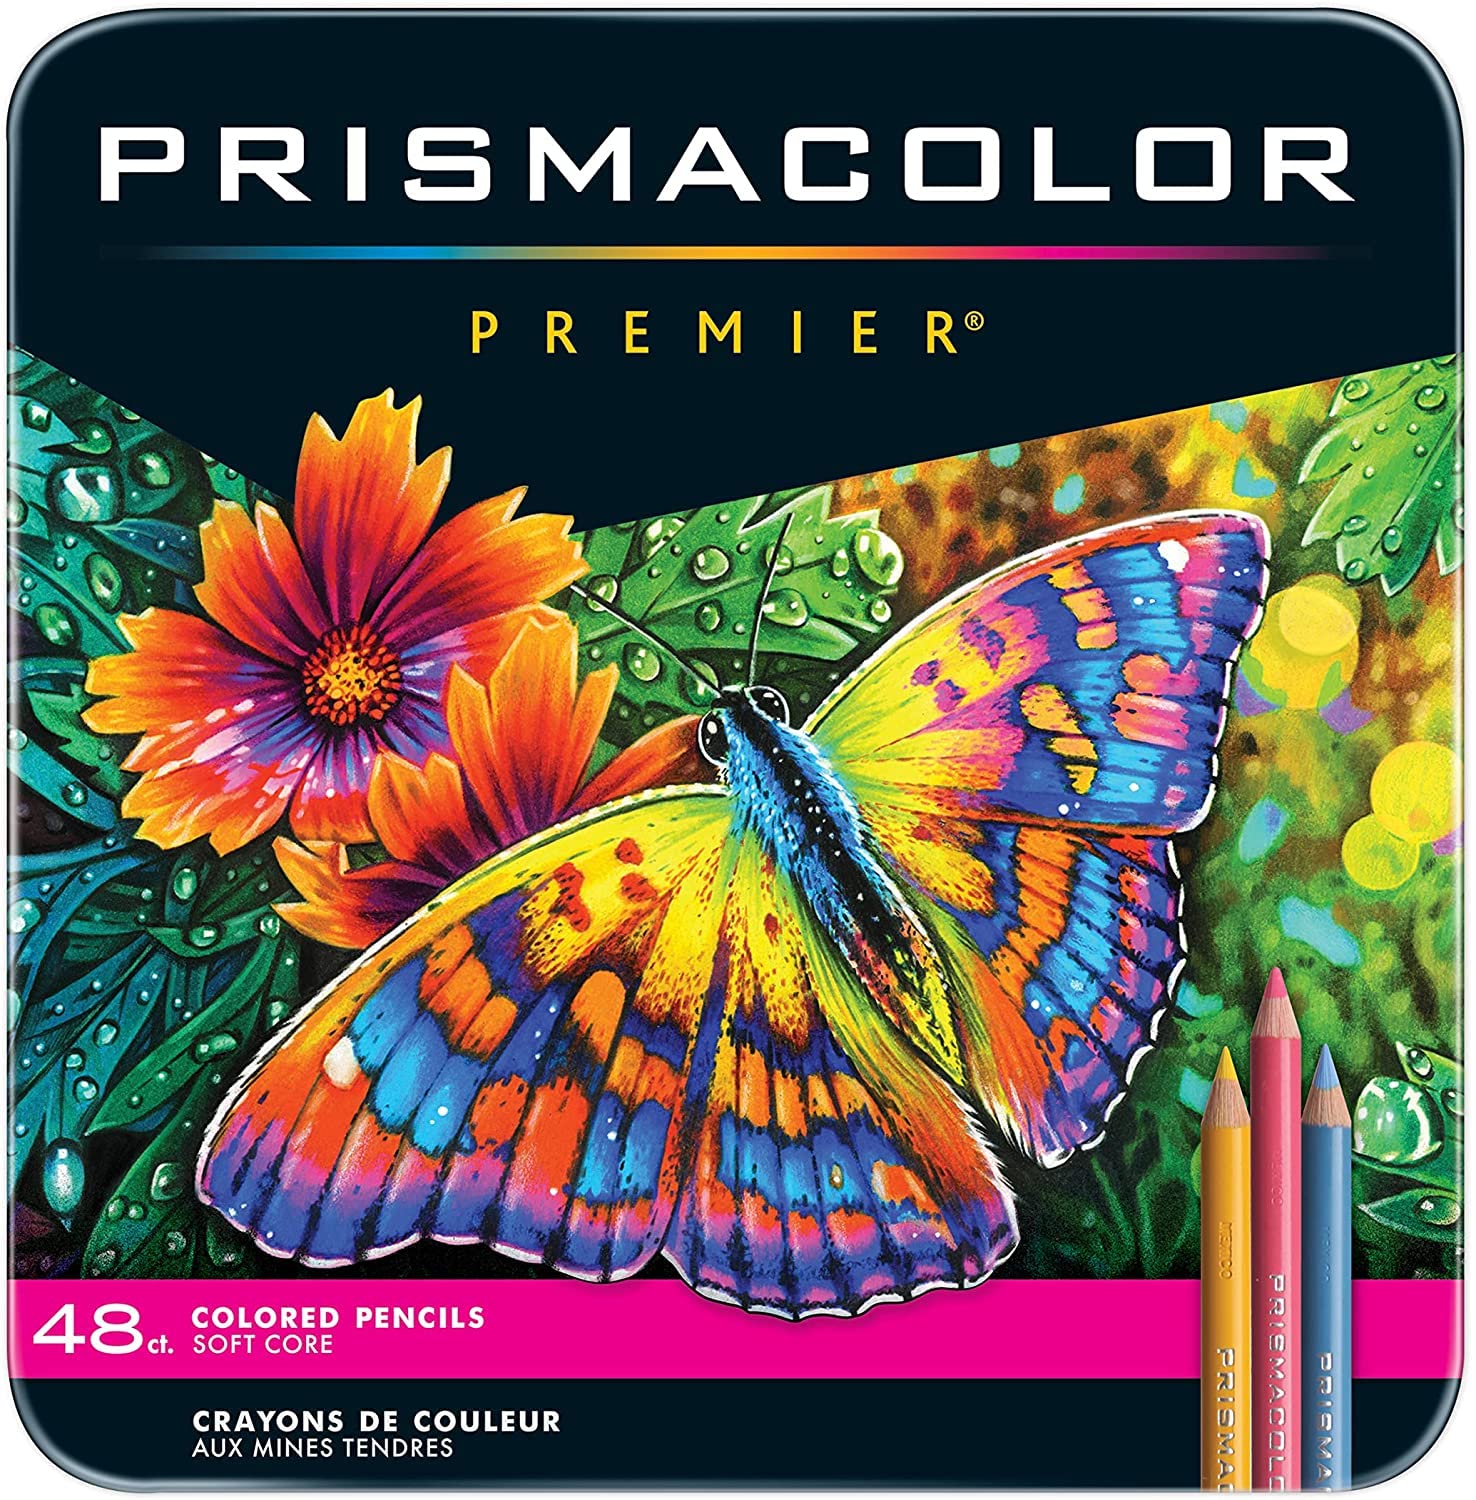 Prisma Color Premier Colored Pencils, Soft Core, 48 Count